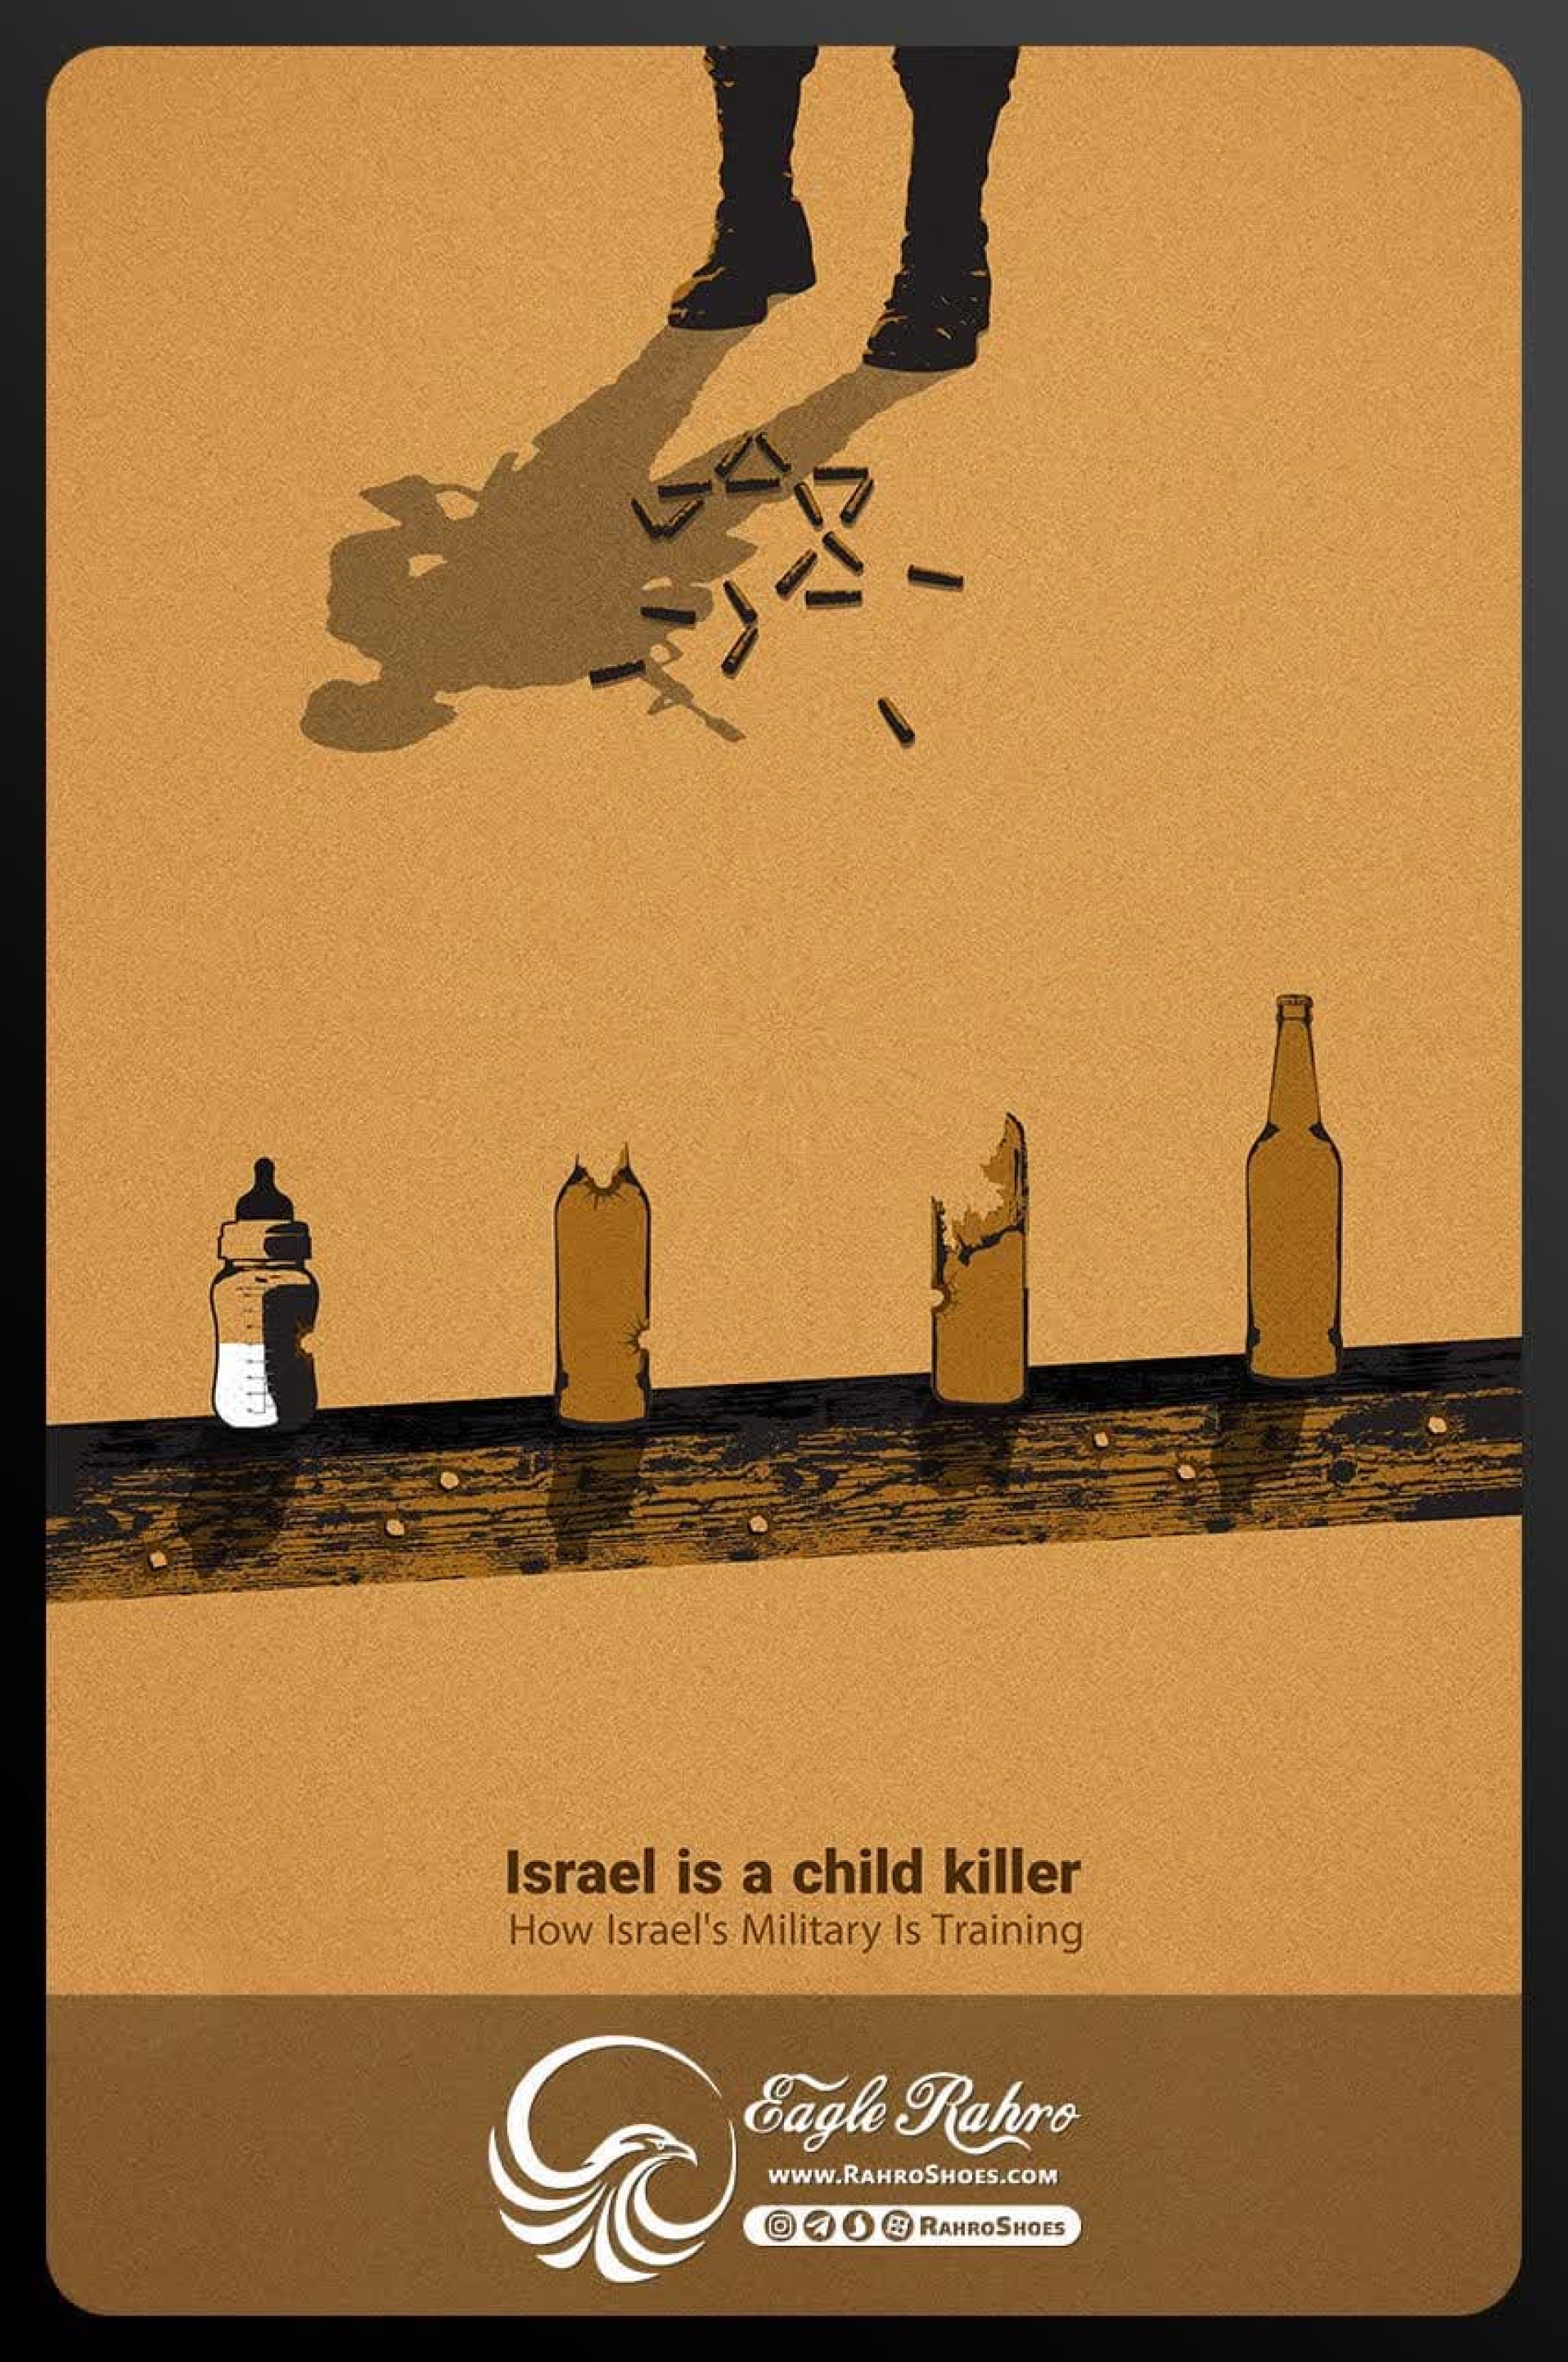 اسرائیل کودک کش